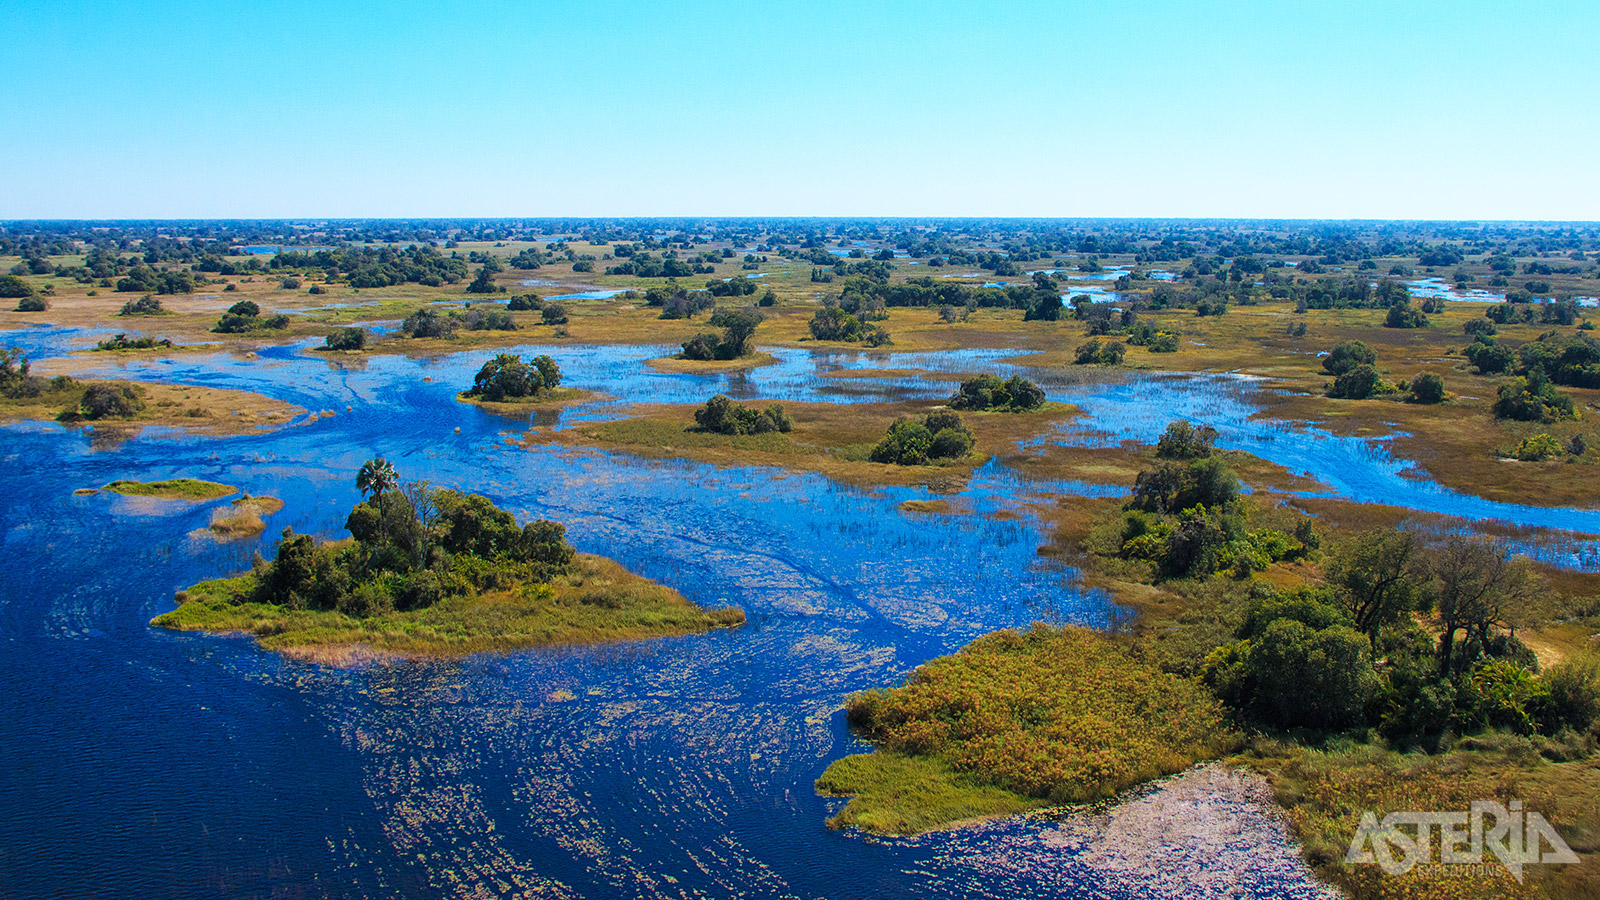 Door de combinatie van moeraslanden, grasvlakten, rivieren en bosjes is de Okavango Delta een paradijs voor tal van dier- en vogelsoorten